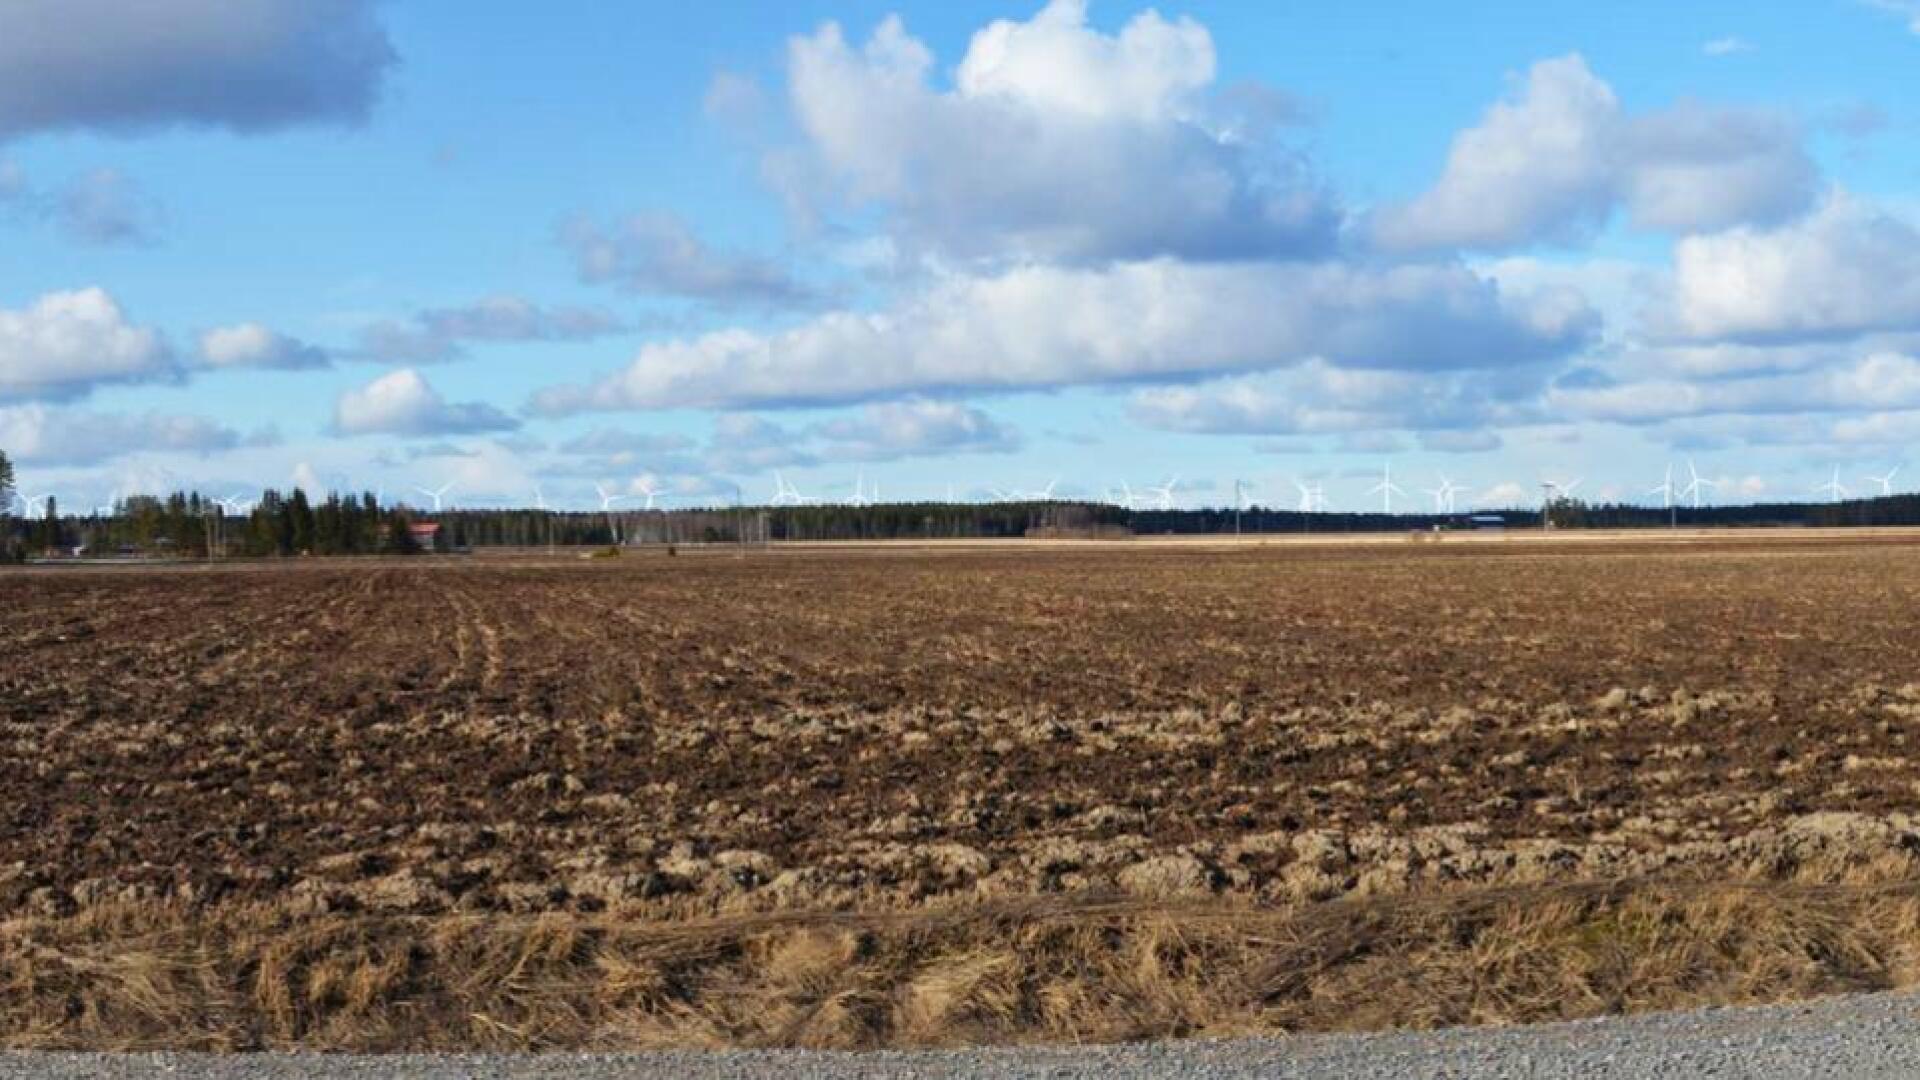 Havainnekuva Puutionsaaren tuulimyllyistä Sarjankylältä. Kuvauspaikan likimääräinen osoite on Ojanperäntie 79.